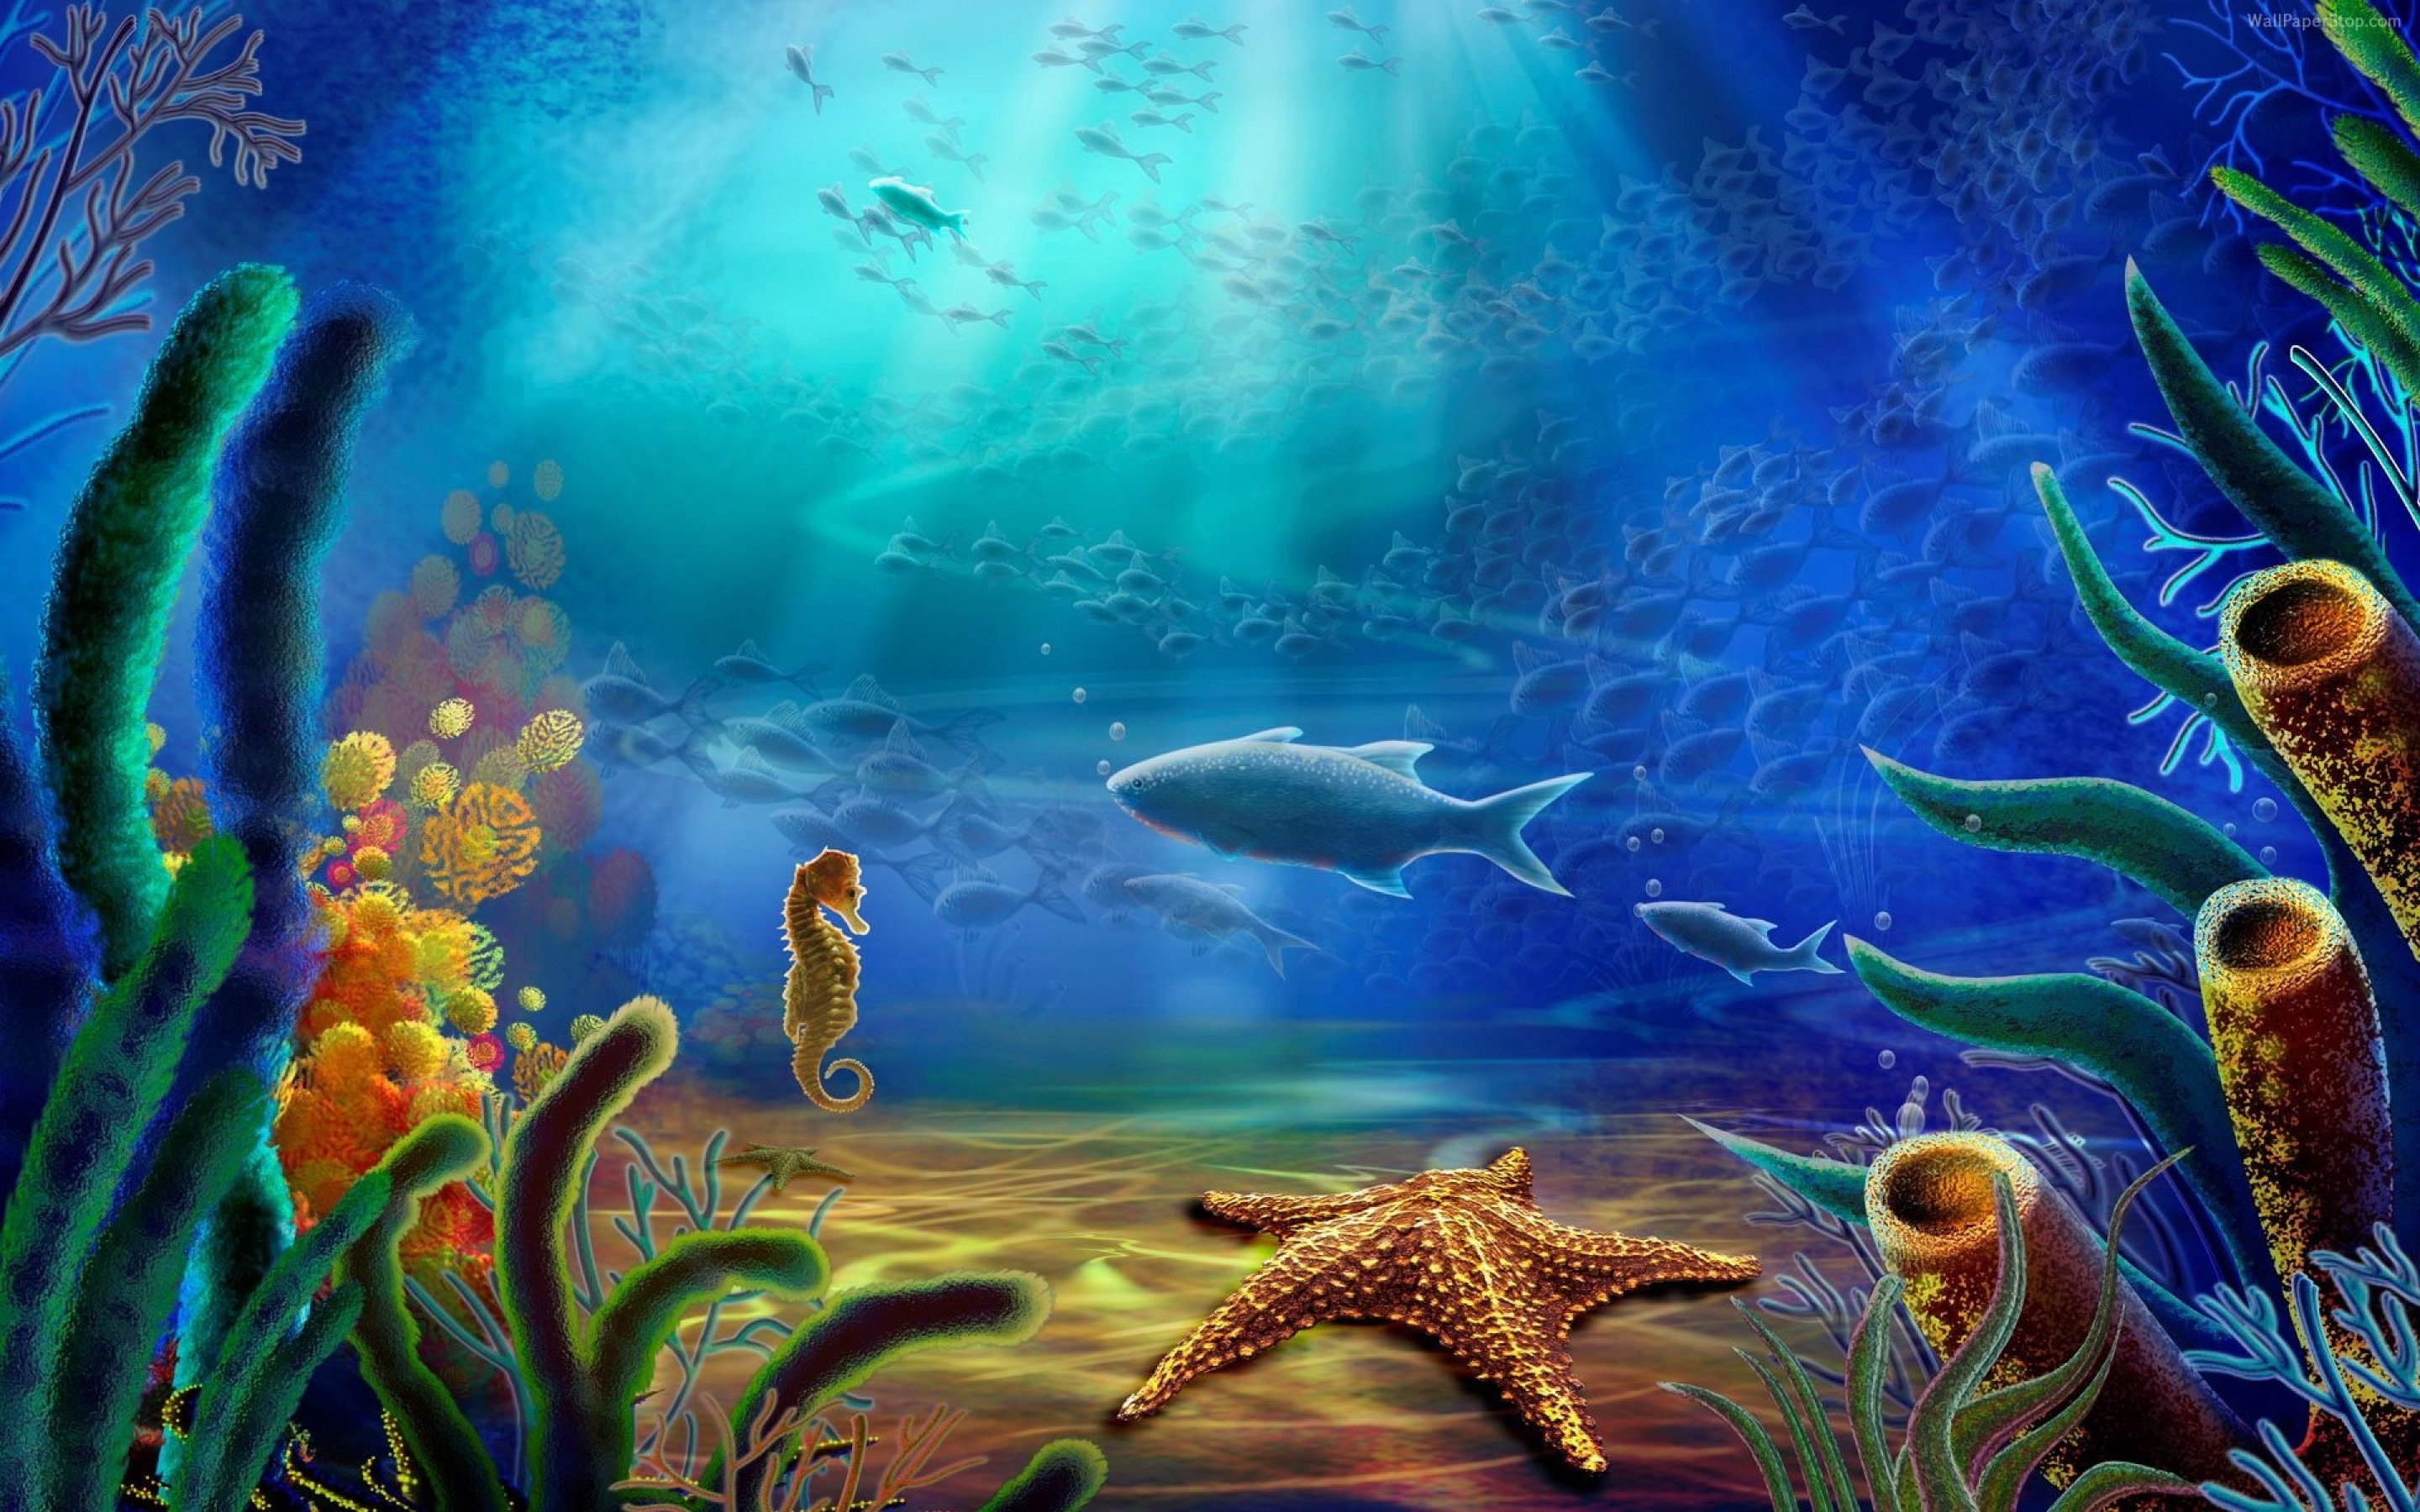 Картинка на дне моря. Морское дно. Подводный мир. Обитатели морского дна. Подводный мир океана.